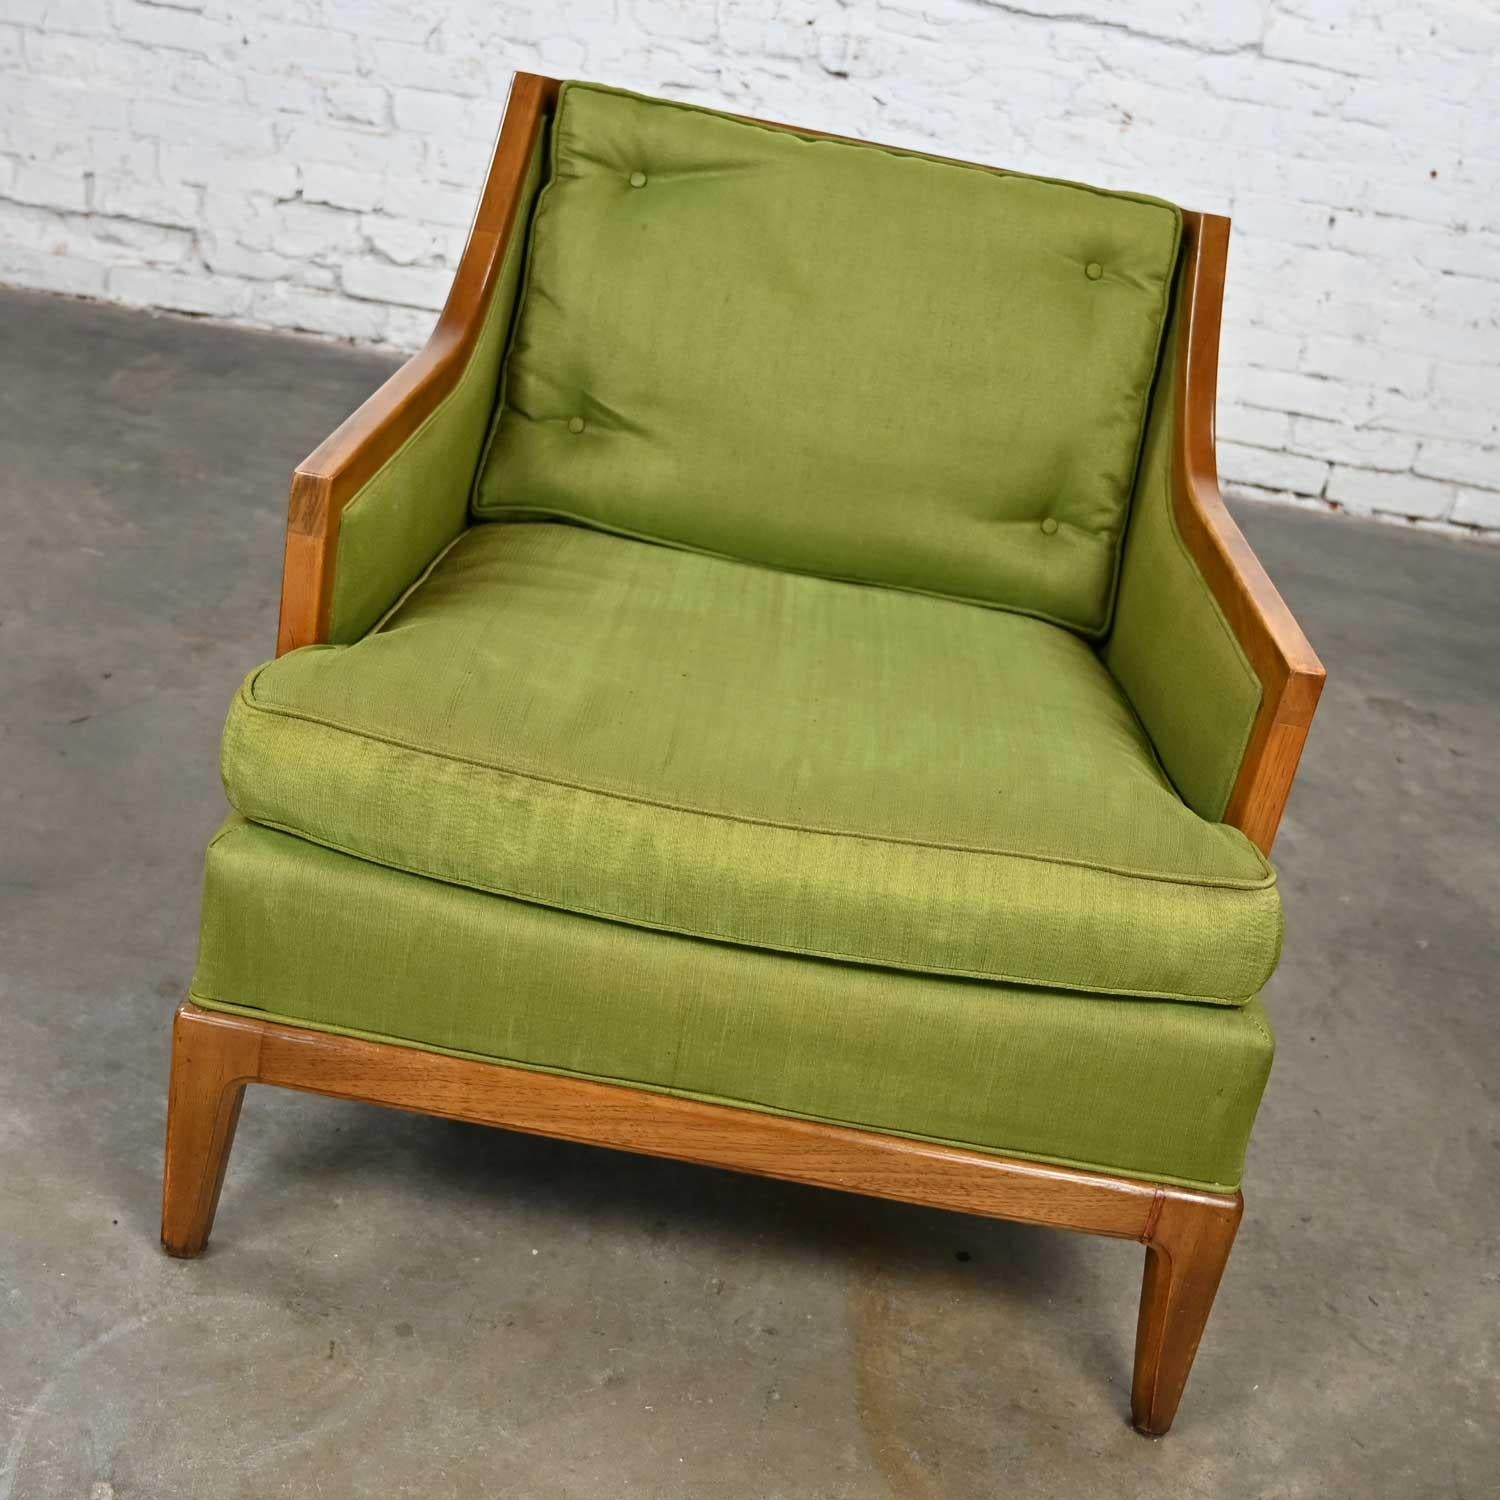 Charmante chaise de salon vintage MCM (Mid-Century Modern) Sears & Roebuck by Drexel Symphony Collection avec un revêtement d'origine en soie verte et un cadre en bois teinté noyer avec des côtés en canne tressée. Très bon état, tout en gardant à